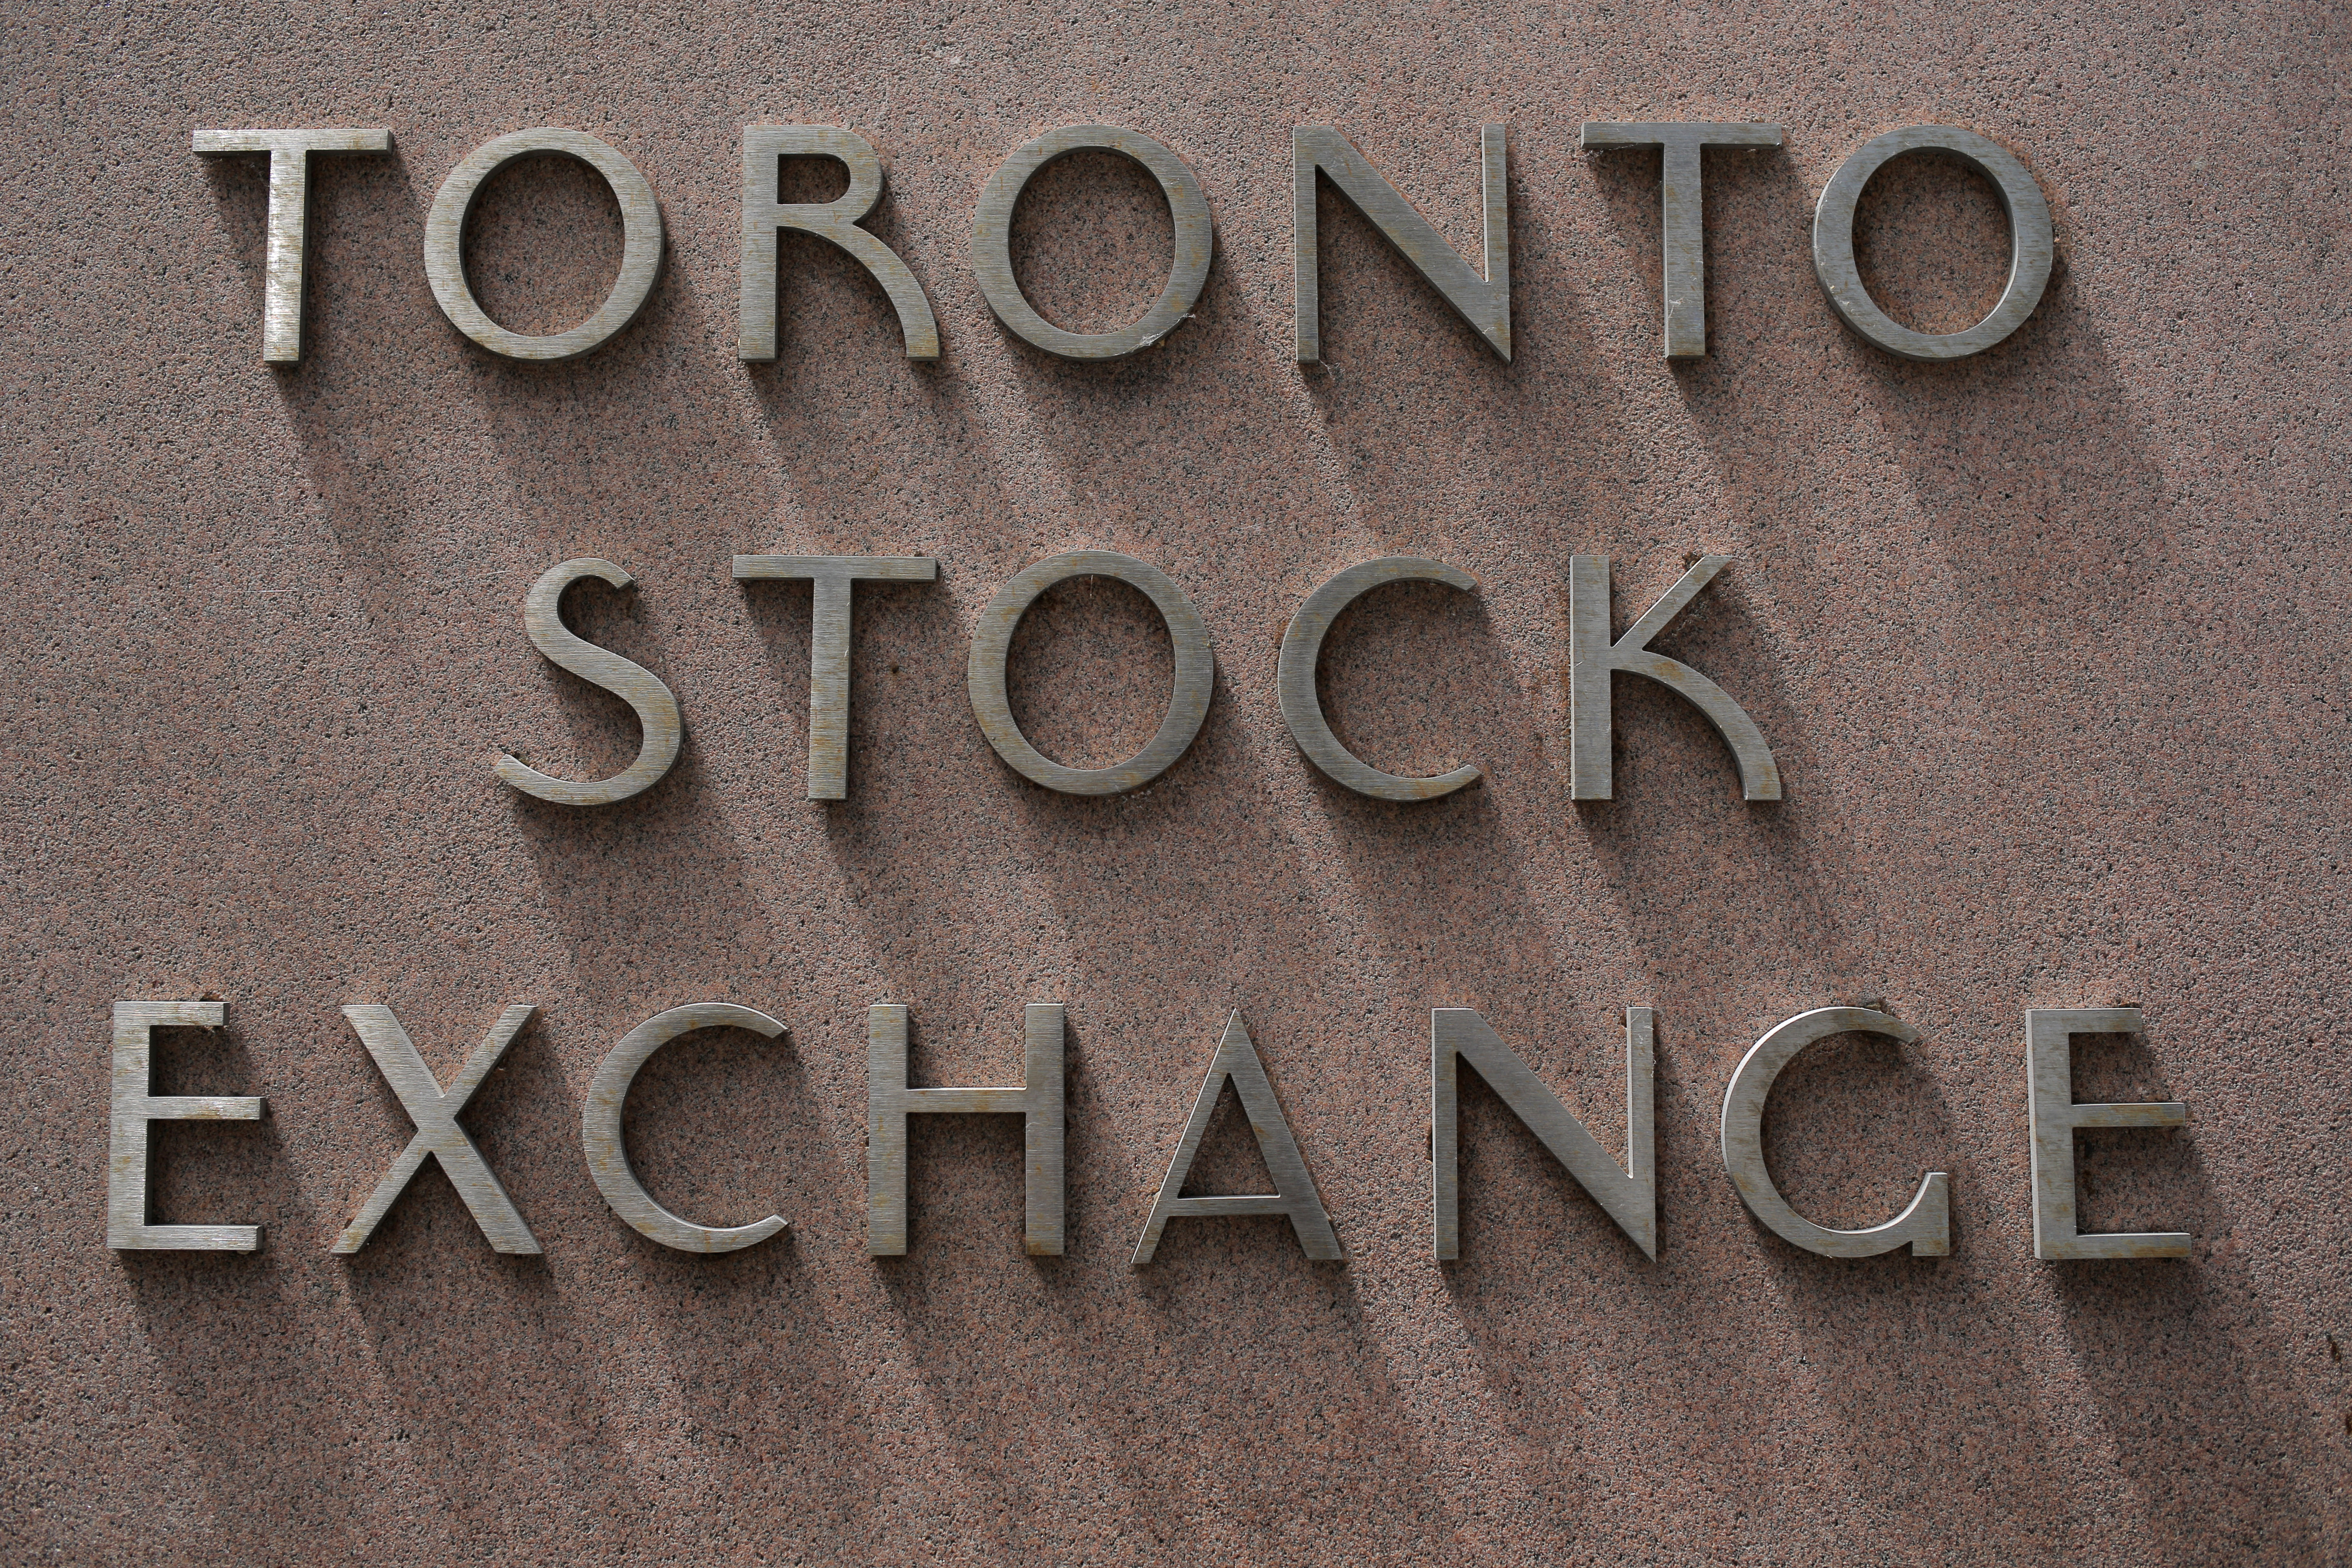 The Toronto Stock Exchange sign is seen in Toronto, Ontario, Canada July 6, 2017. REUTERS/Chris Helgren